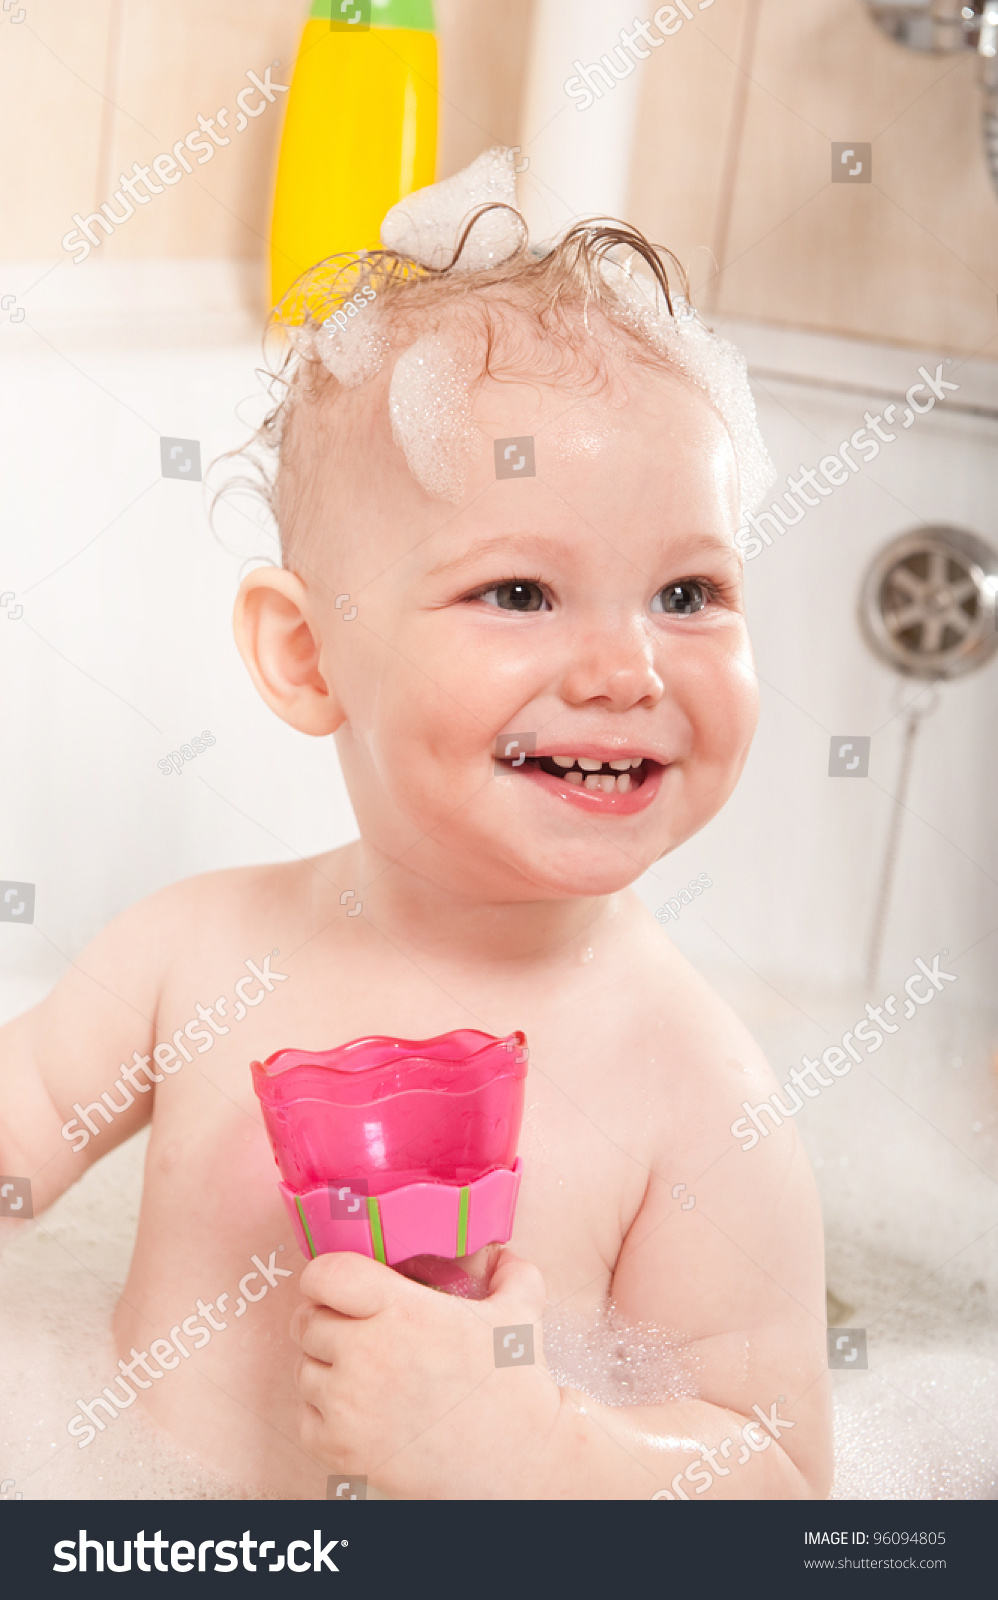 маленькие дети в ванне порно фото 25